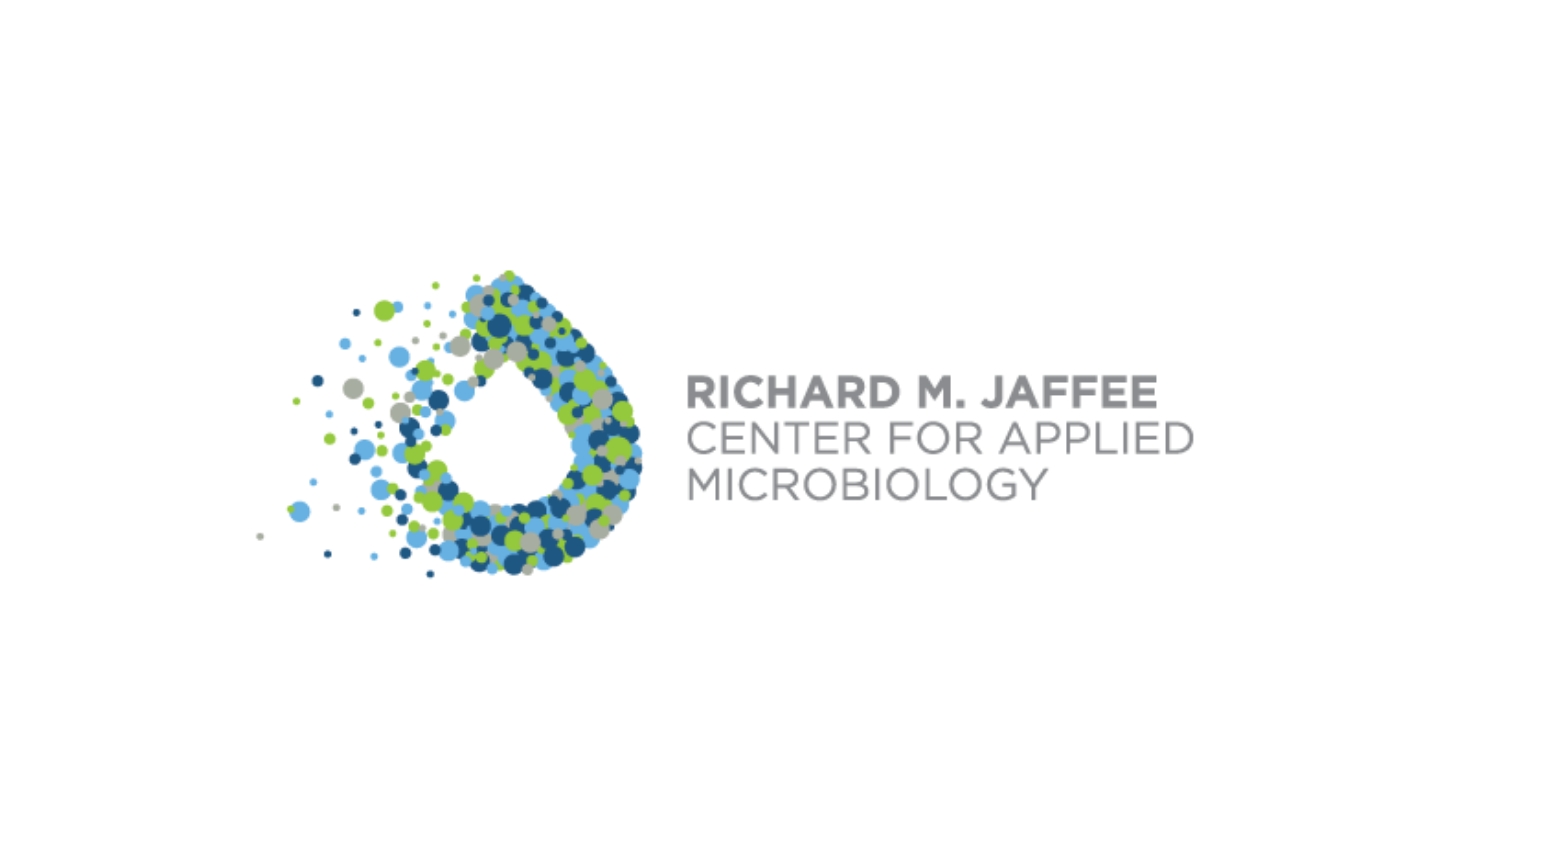 Logotipo de um Laboratório central de Richard M. Jaffee.